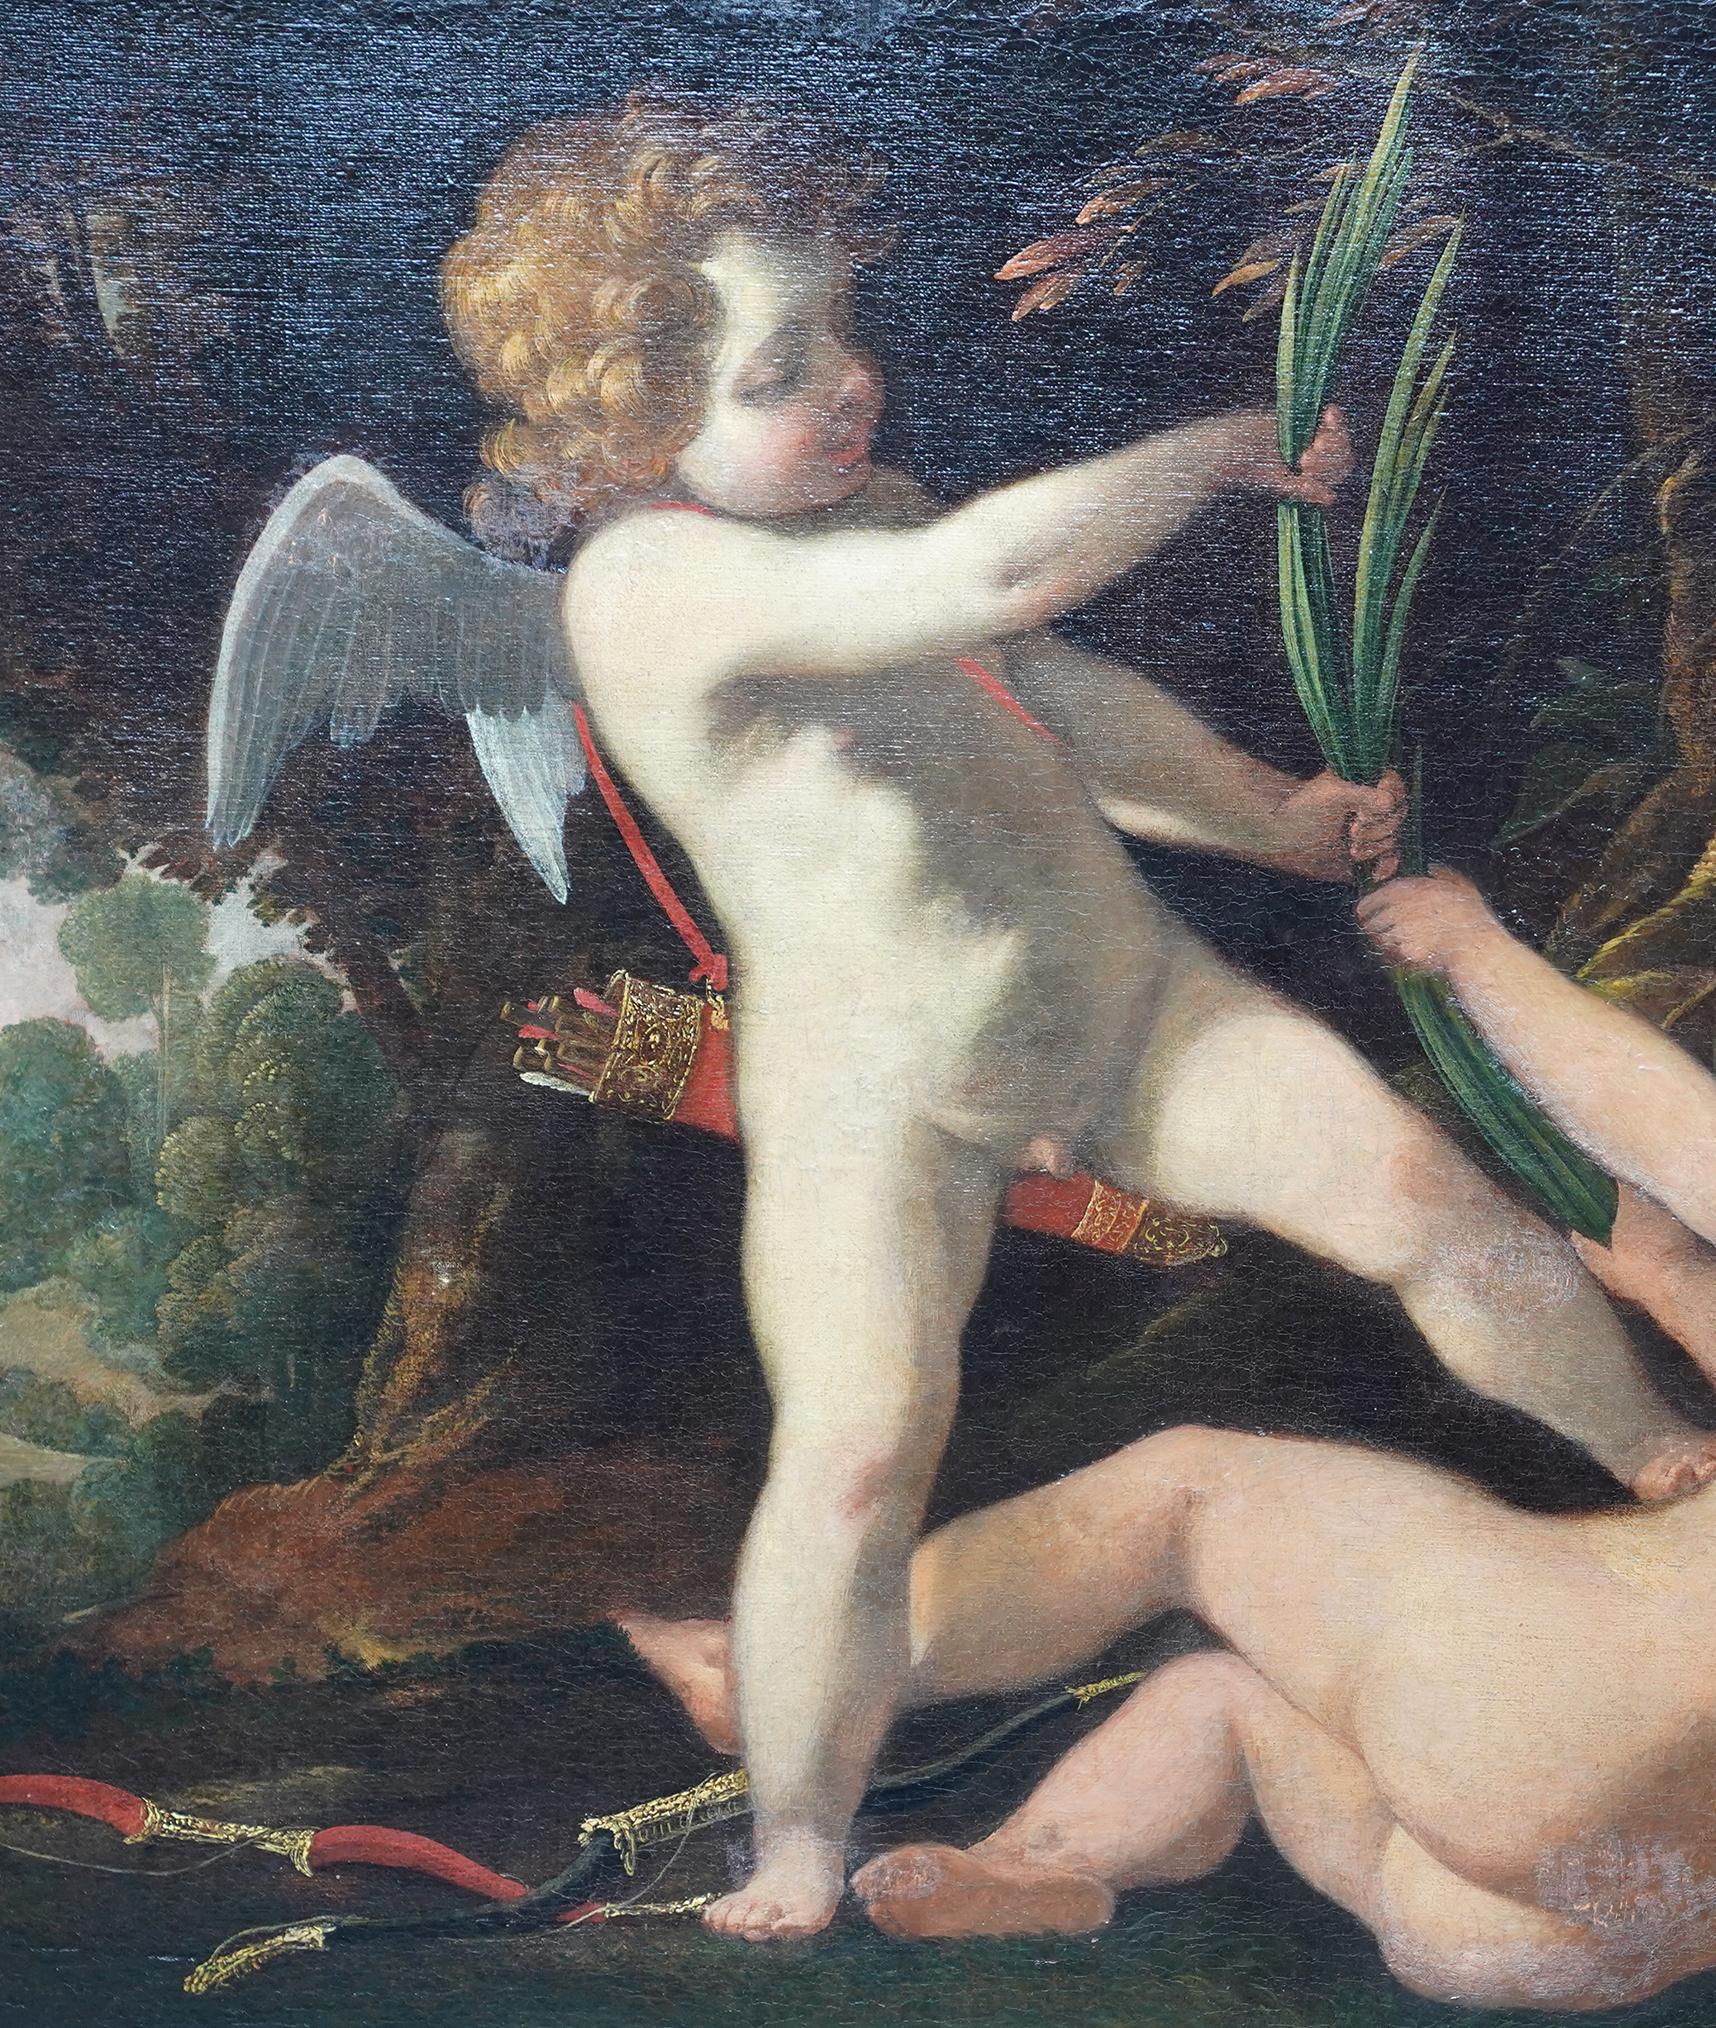 Cette superbe peinture à l'huile de maître ancienne du XVIIe siècle est l'œuvre de l'artiste baroque Laurent de la Hyre. Elle a été peinte vers 1645 et possède une excellente provenance de Christie's.  Il s'agit d'une superbe huile sur toile de